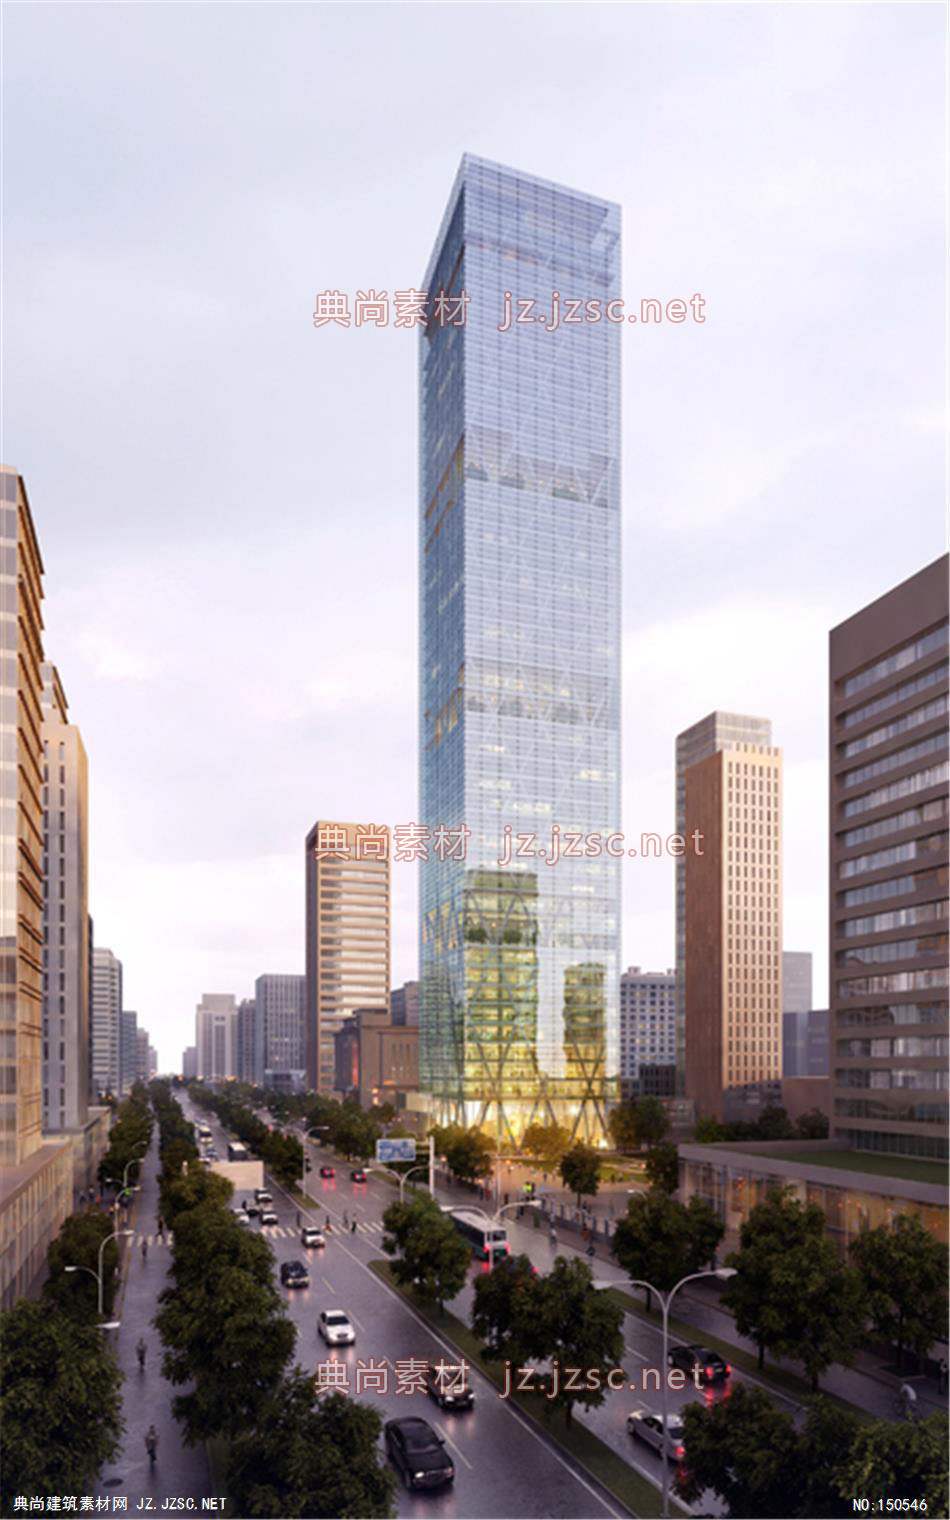 Torre 办公楼04高层办公效果图+交通及医疗建筑效果图